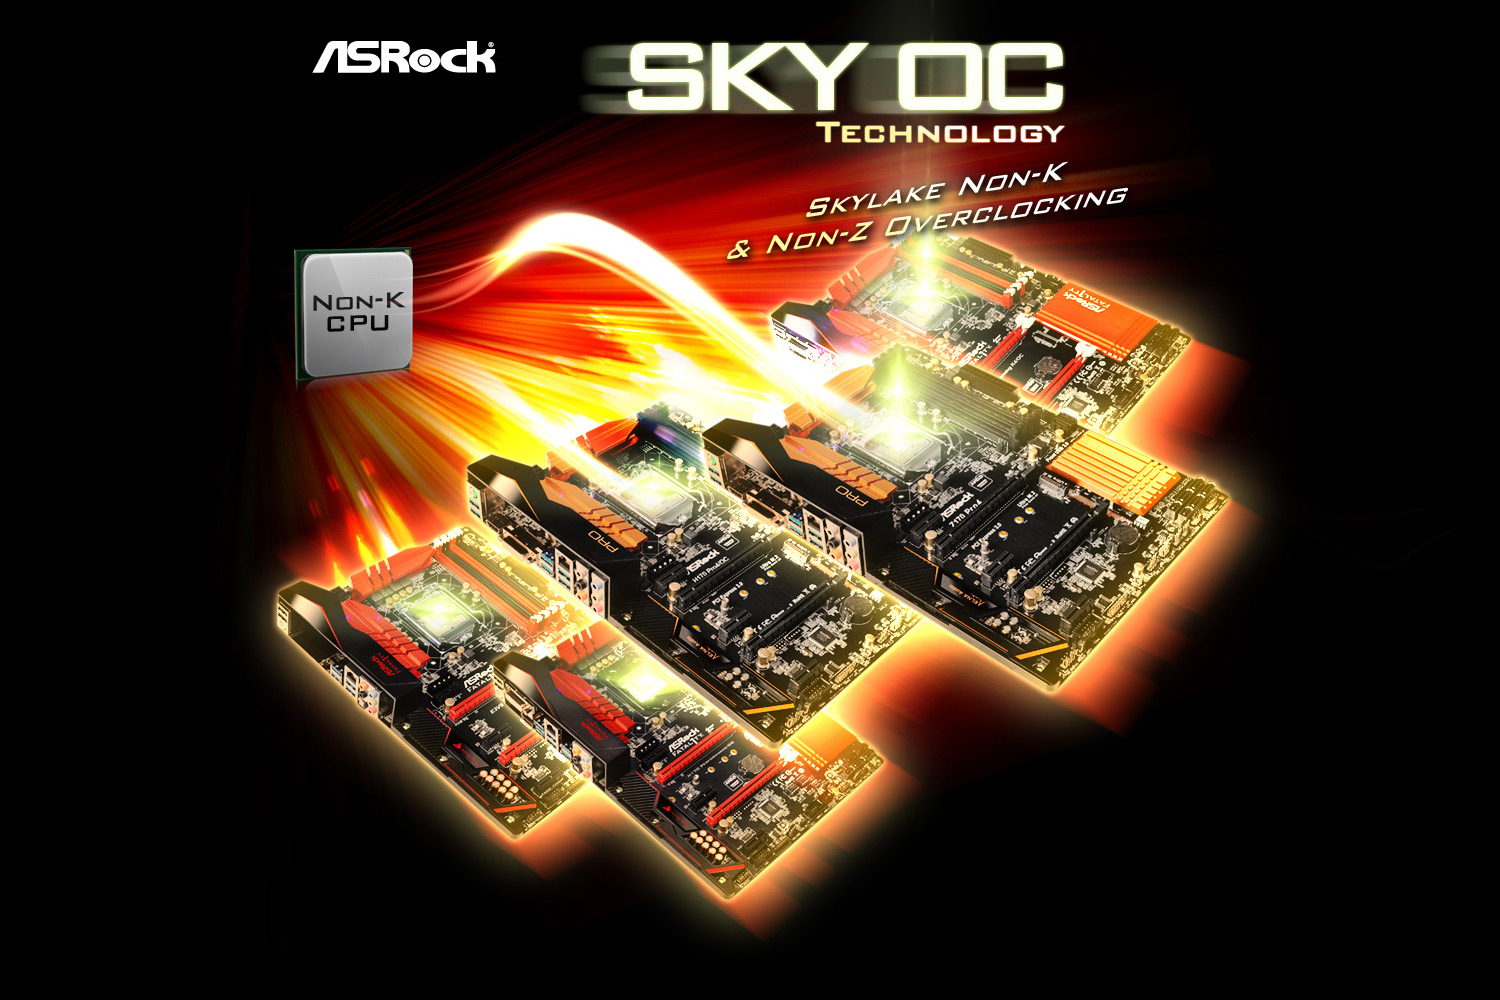 skyoc ASRock SKY OC Technology NON K Overclocking  